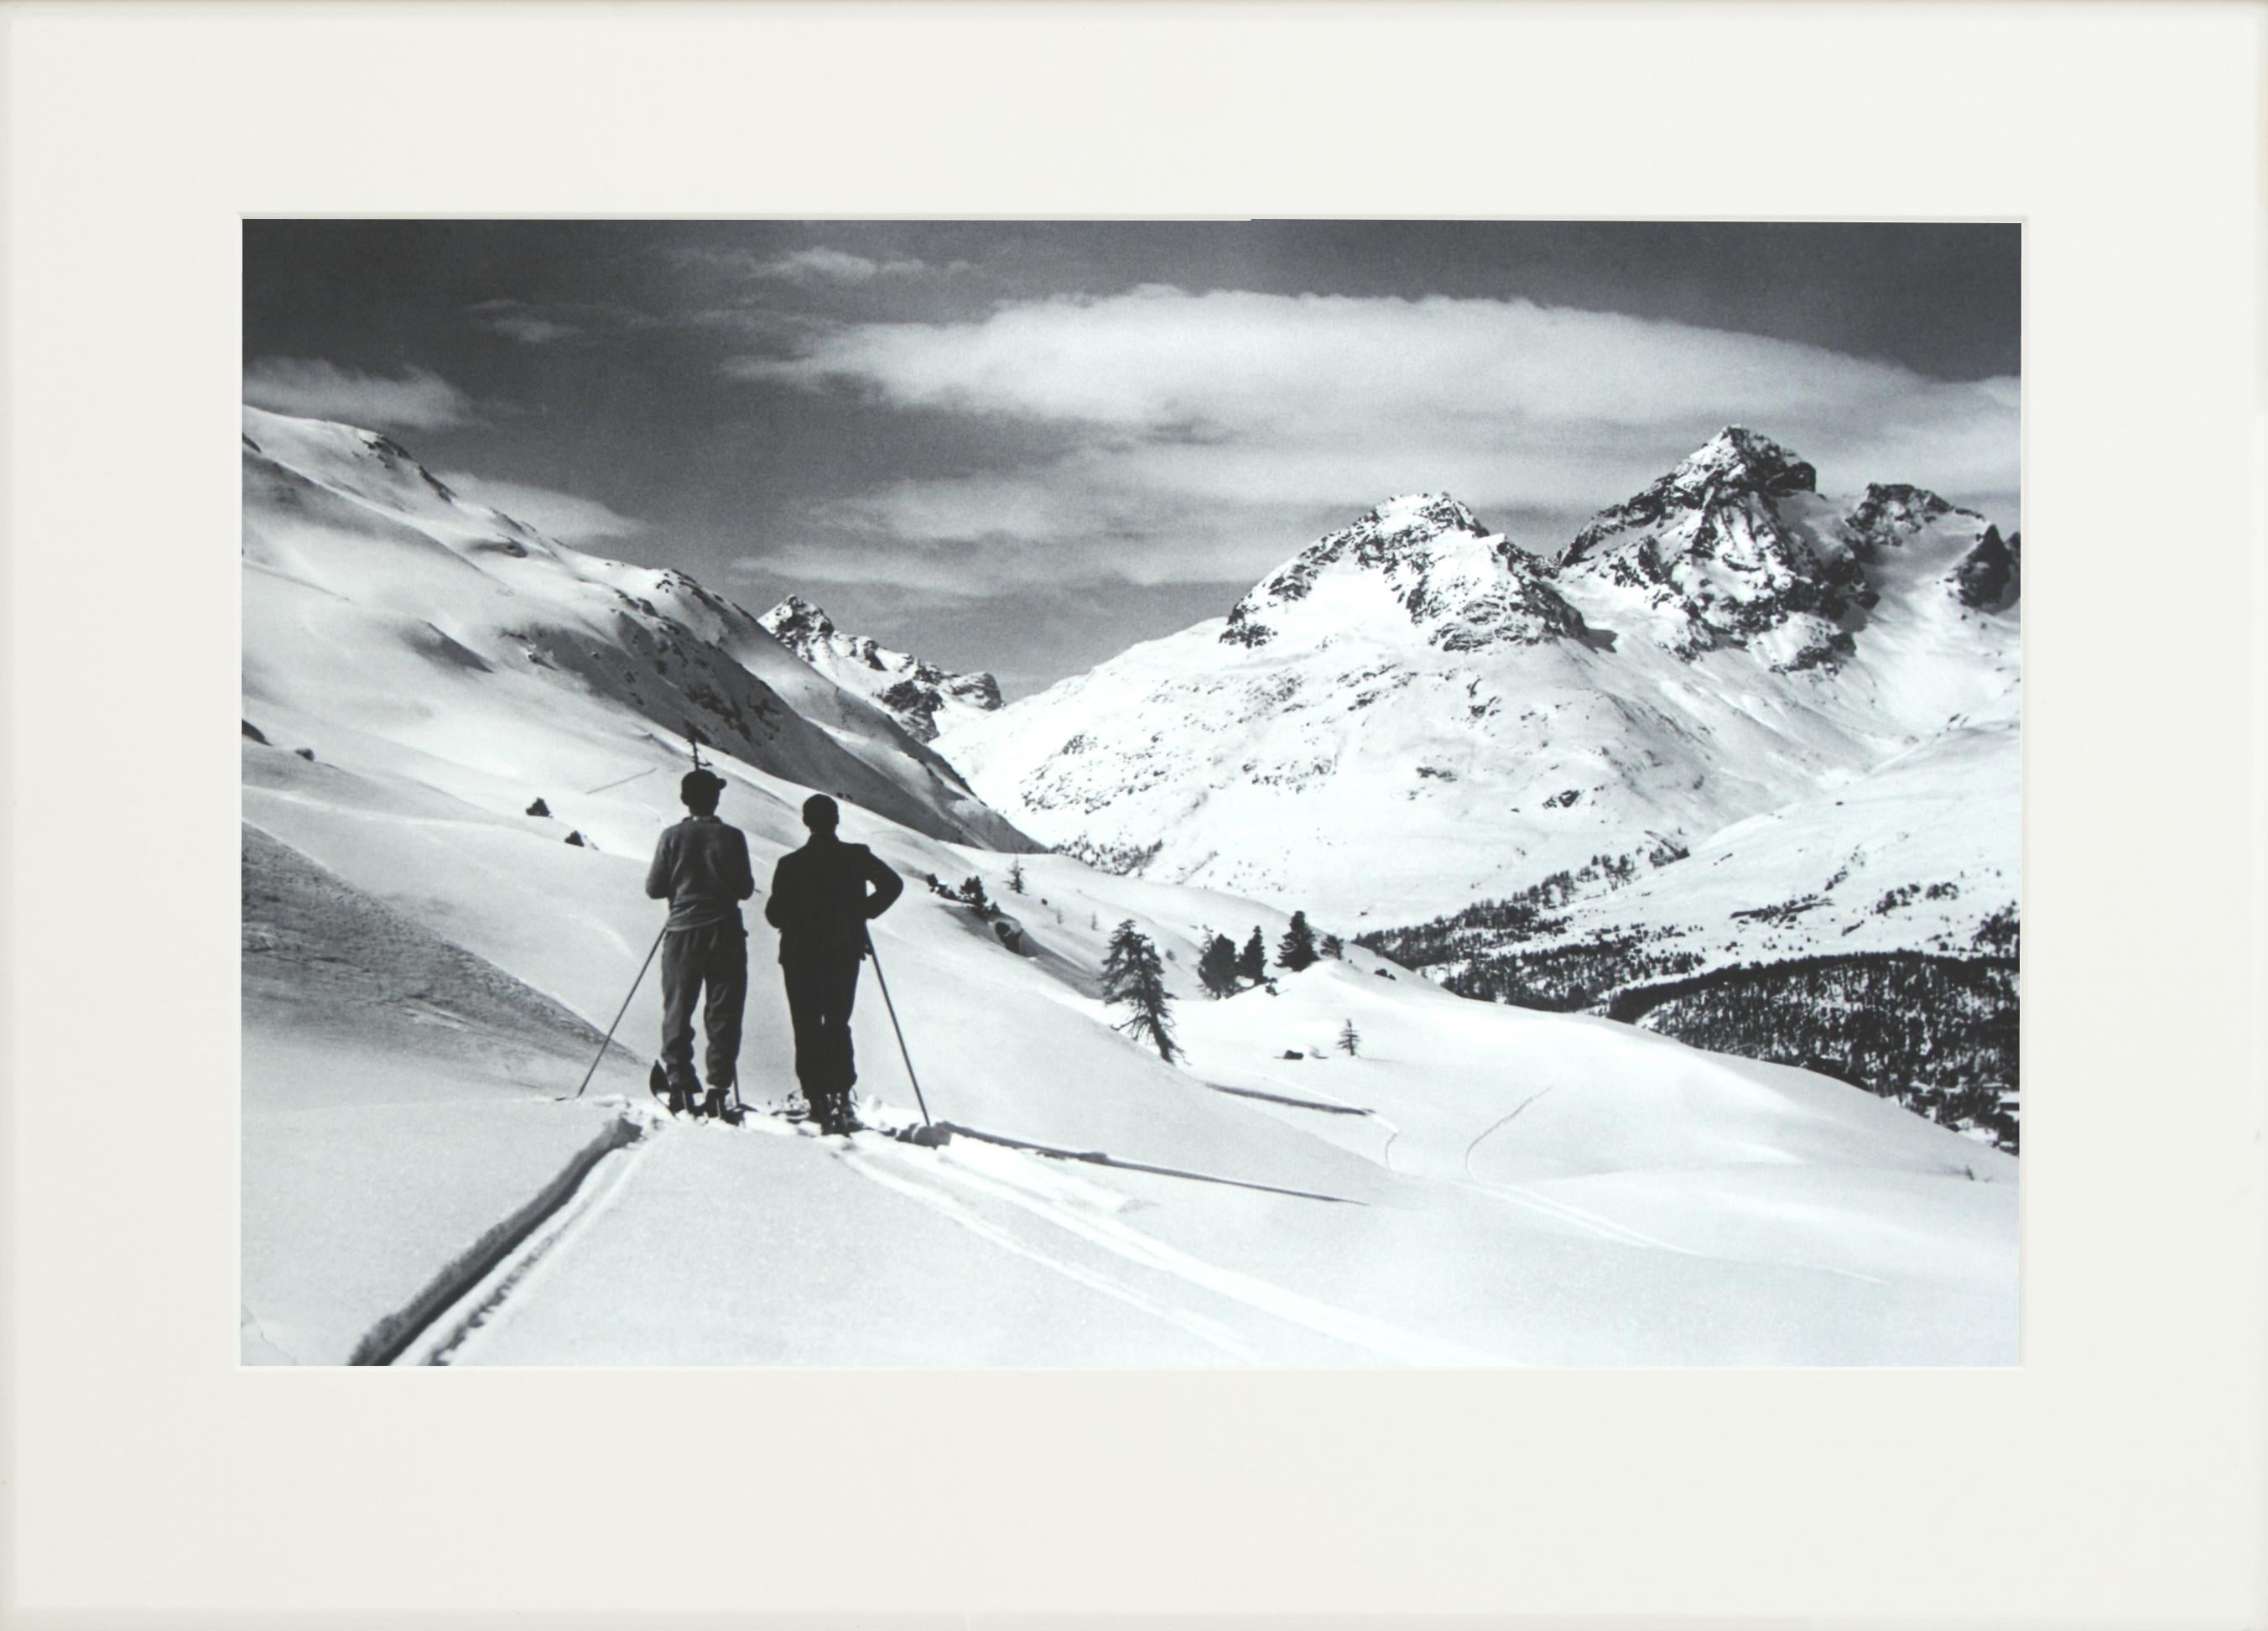 Alpinskifotografie, „Panoramikansicht“, aufgenommen nach einer Originalfotografie aus den 1930er Jahren (Jagdkunst) im Angebot